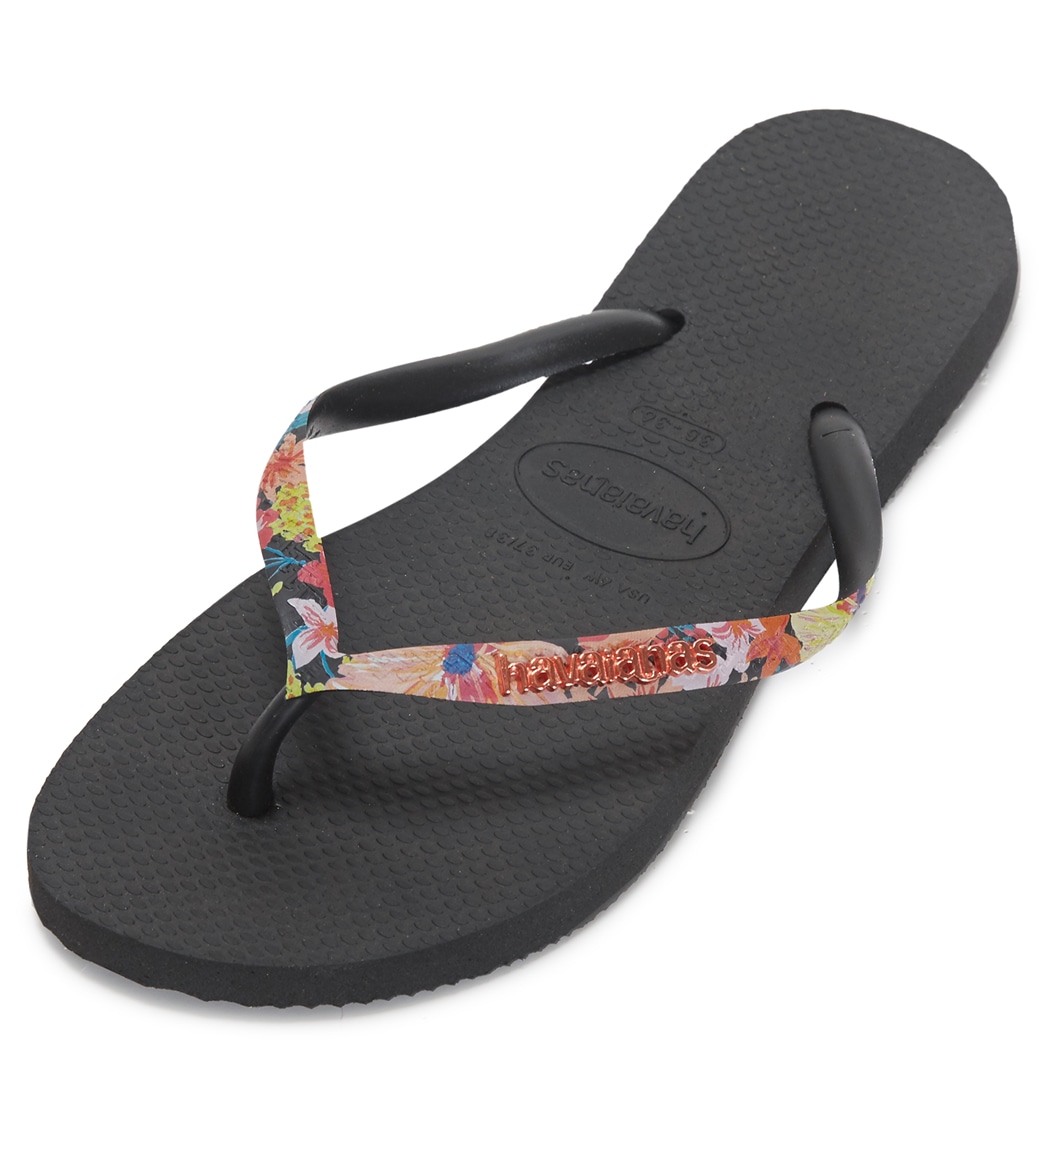 Havaianas Women's Slim Strapped Sandals - Black/Black 35/36 - Swimoutlet.com